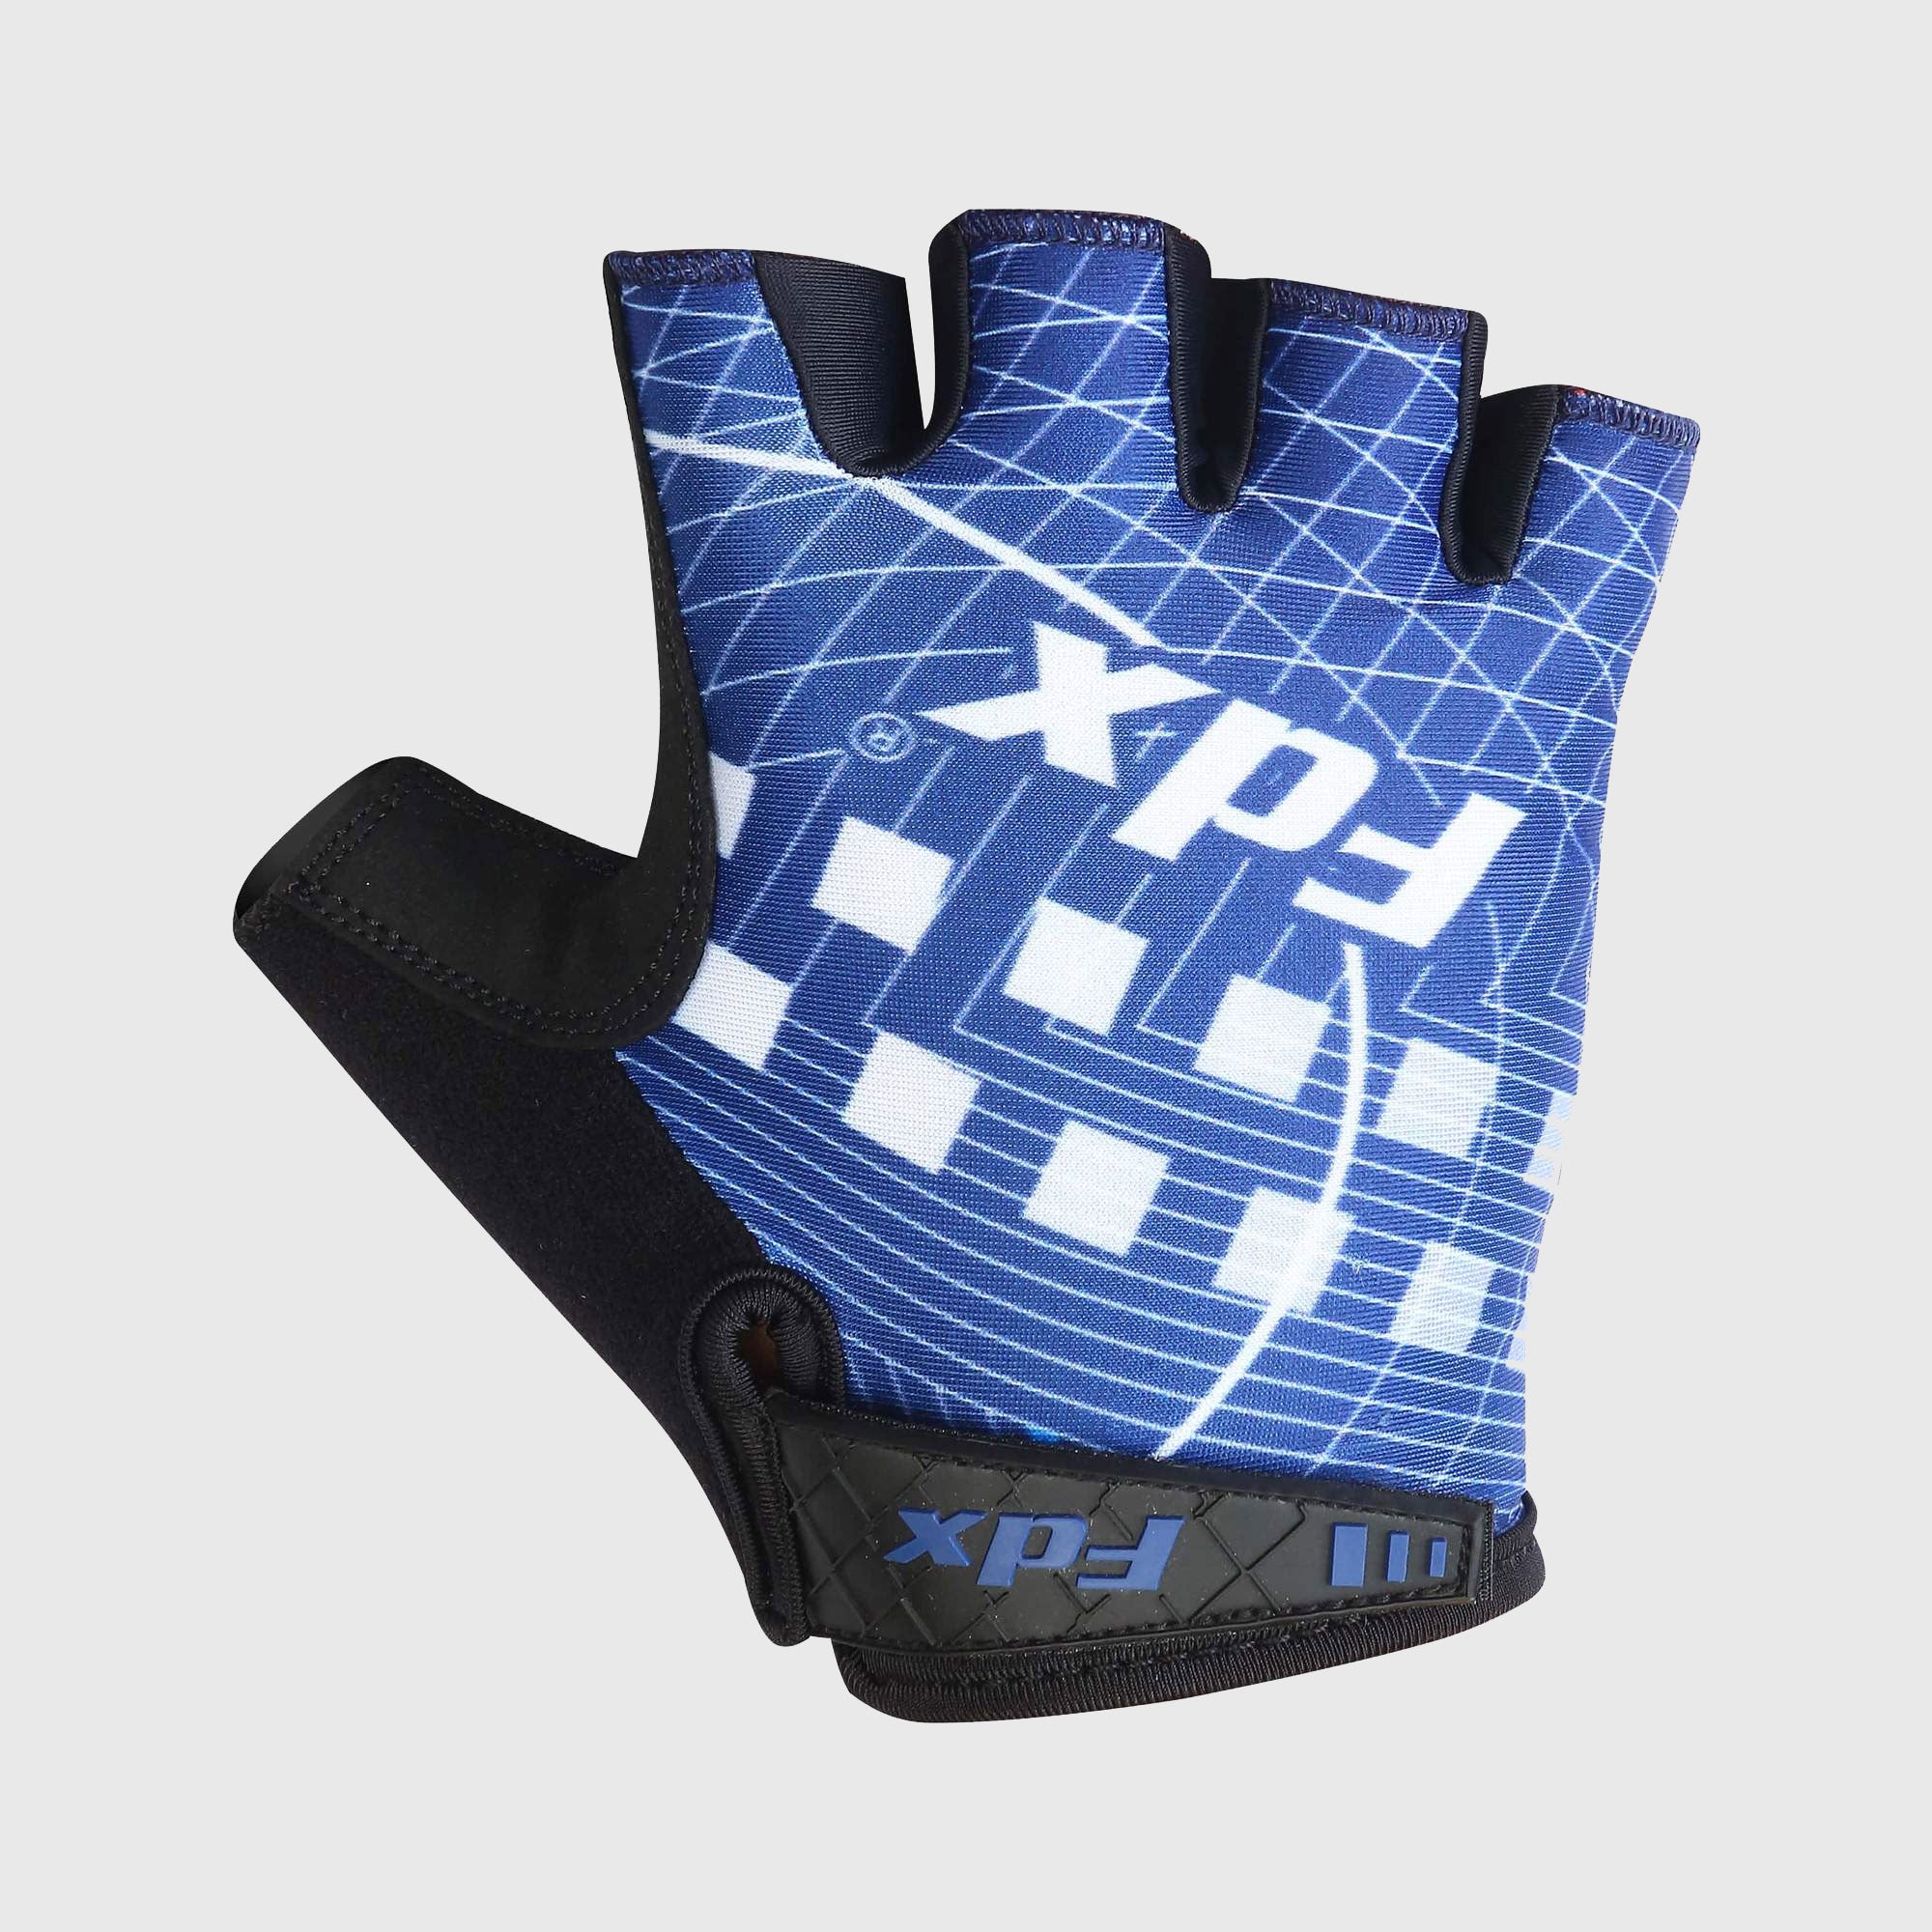 Fdx Black & Navy Blue Short Finger Cycling Gloves for Summer MTB Road Bike fingerless, anti slip & Breathable - Classic II